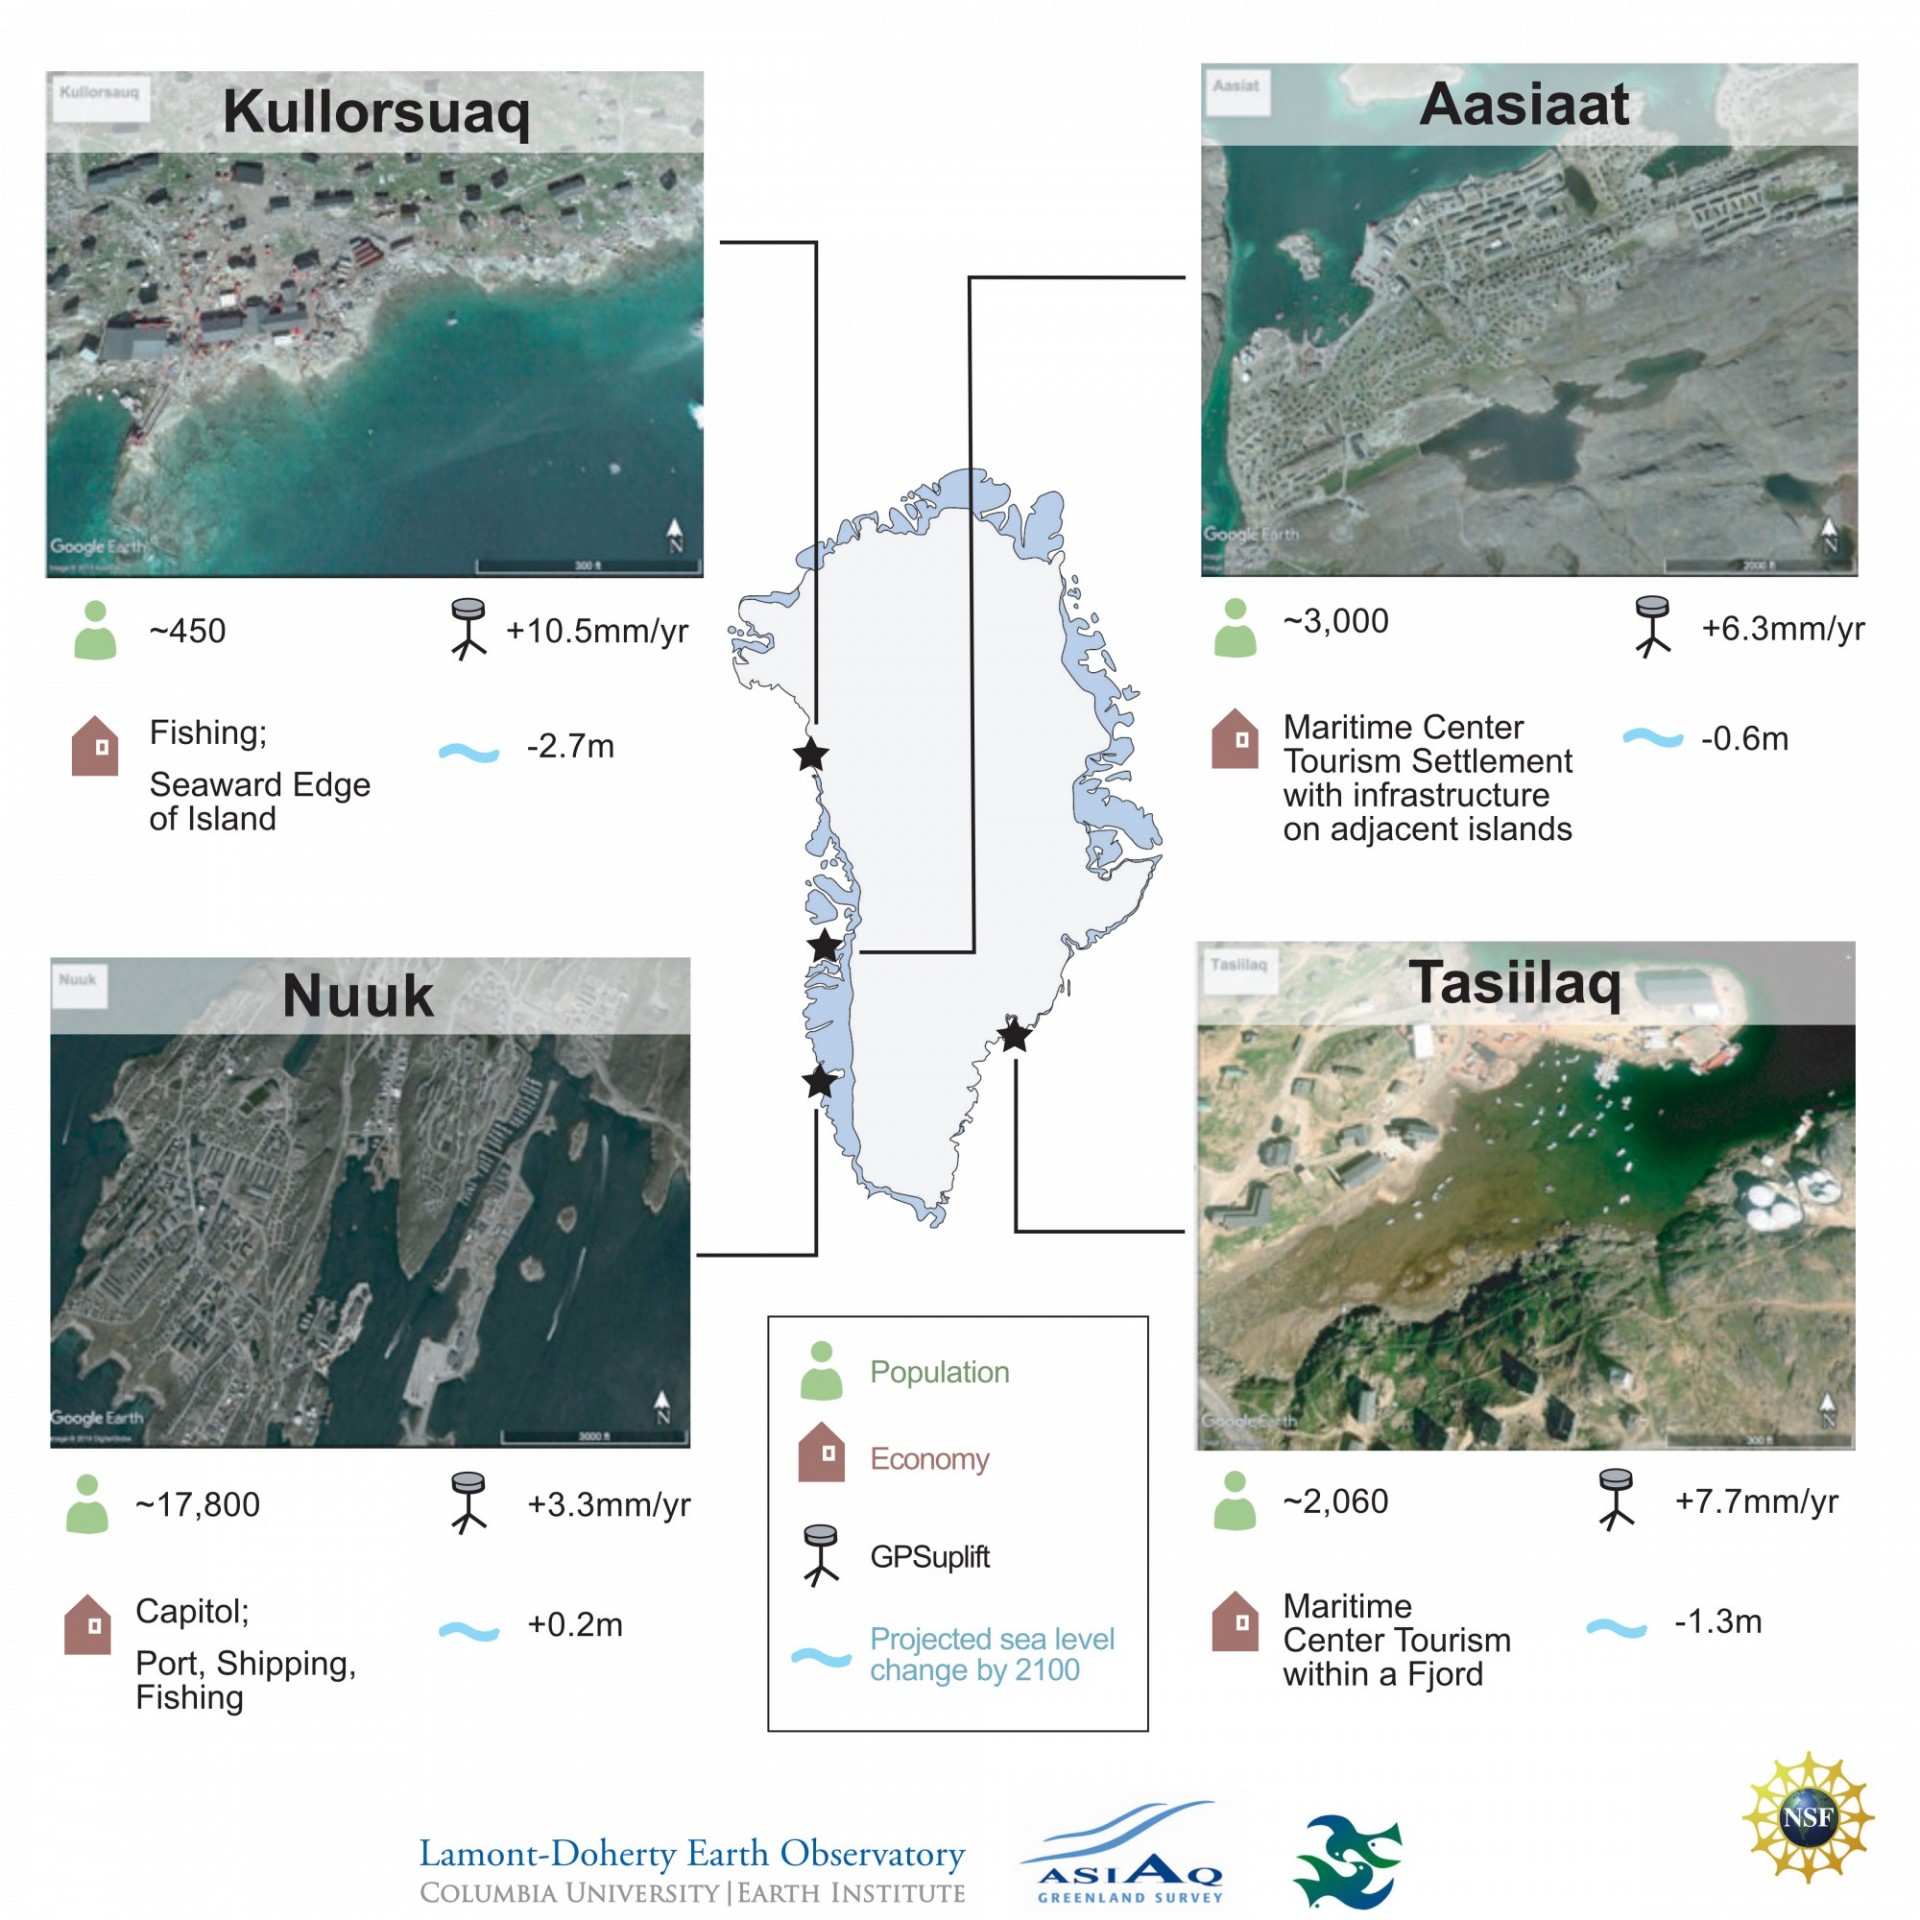 Four Greenlandic Communities infographic - description below